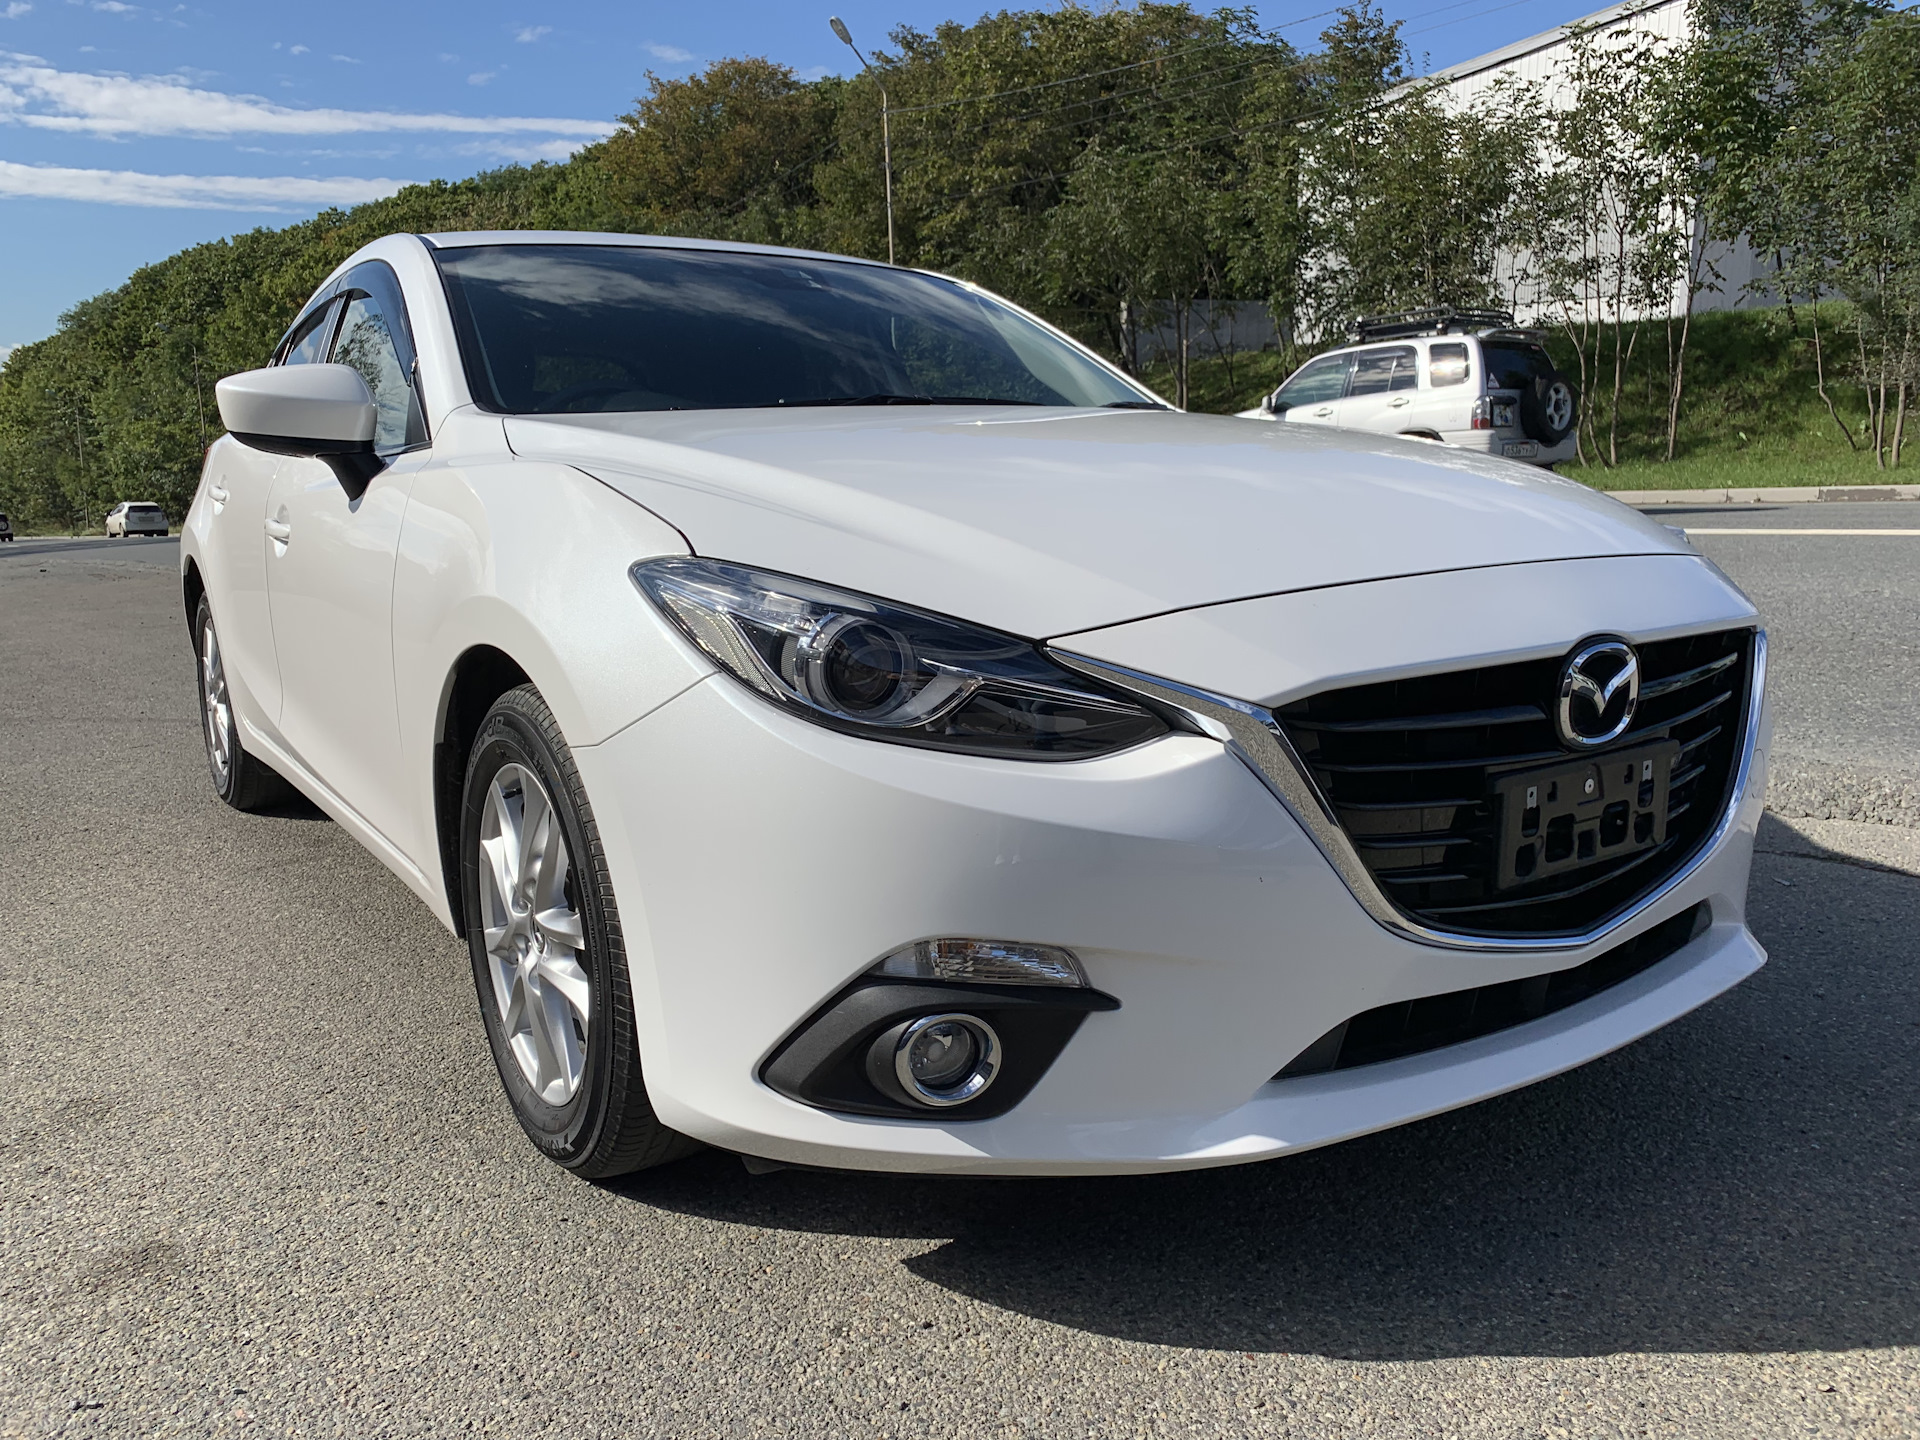 Аксела 2017 год. Mazda Axela 2015. Mazda Axela 2019. Mazda Axela 2017. Mazda Axela 2015 белая.